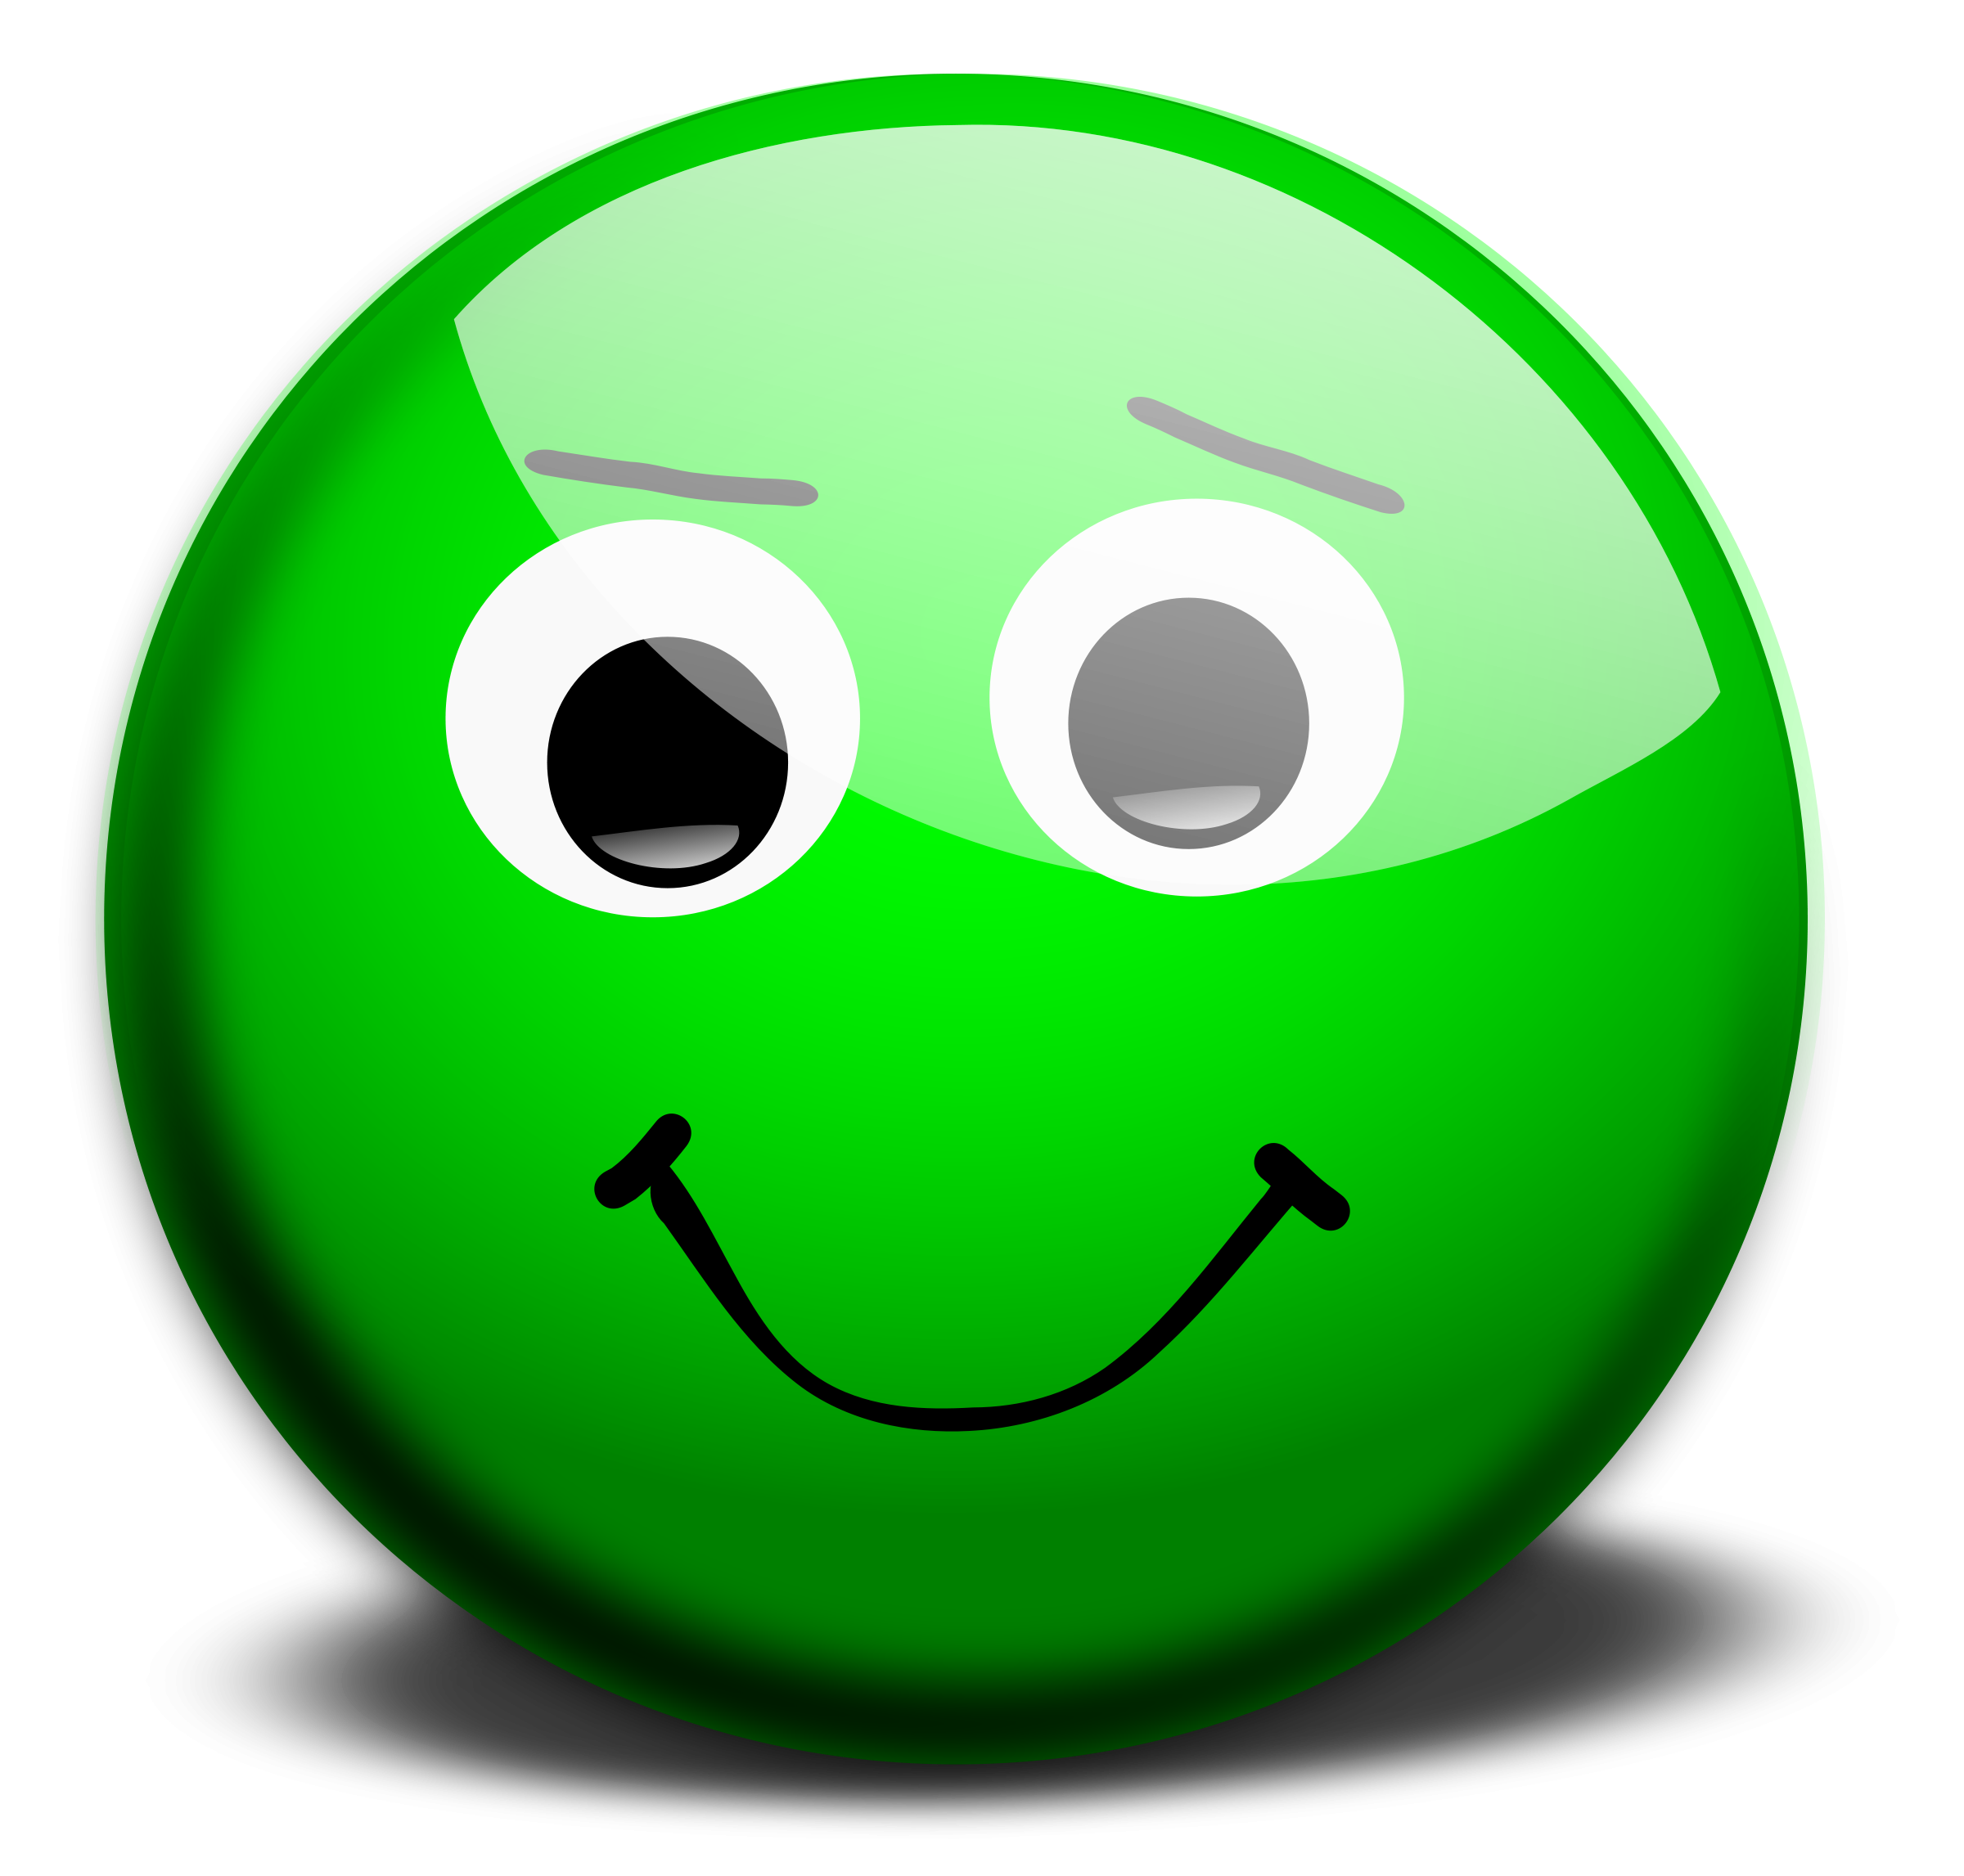 Green smiley face clipart